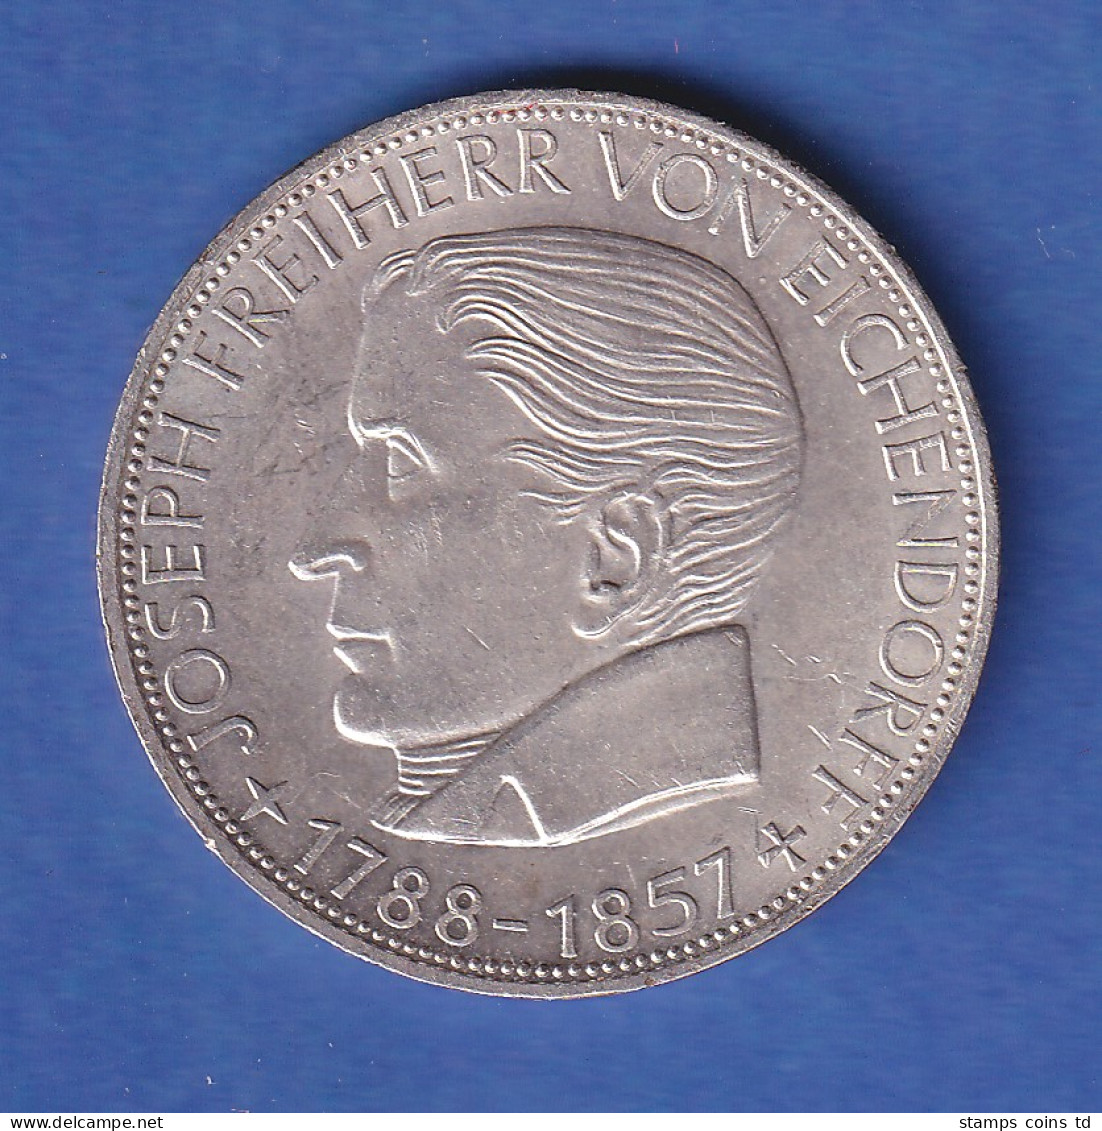  5DM Silber-Gedenkmünze 1957 Joseph Freiherr Von Eichendorff, Vorzügliche Erh. - 5 Marchi